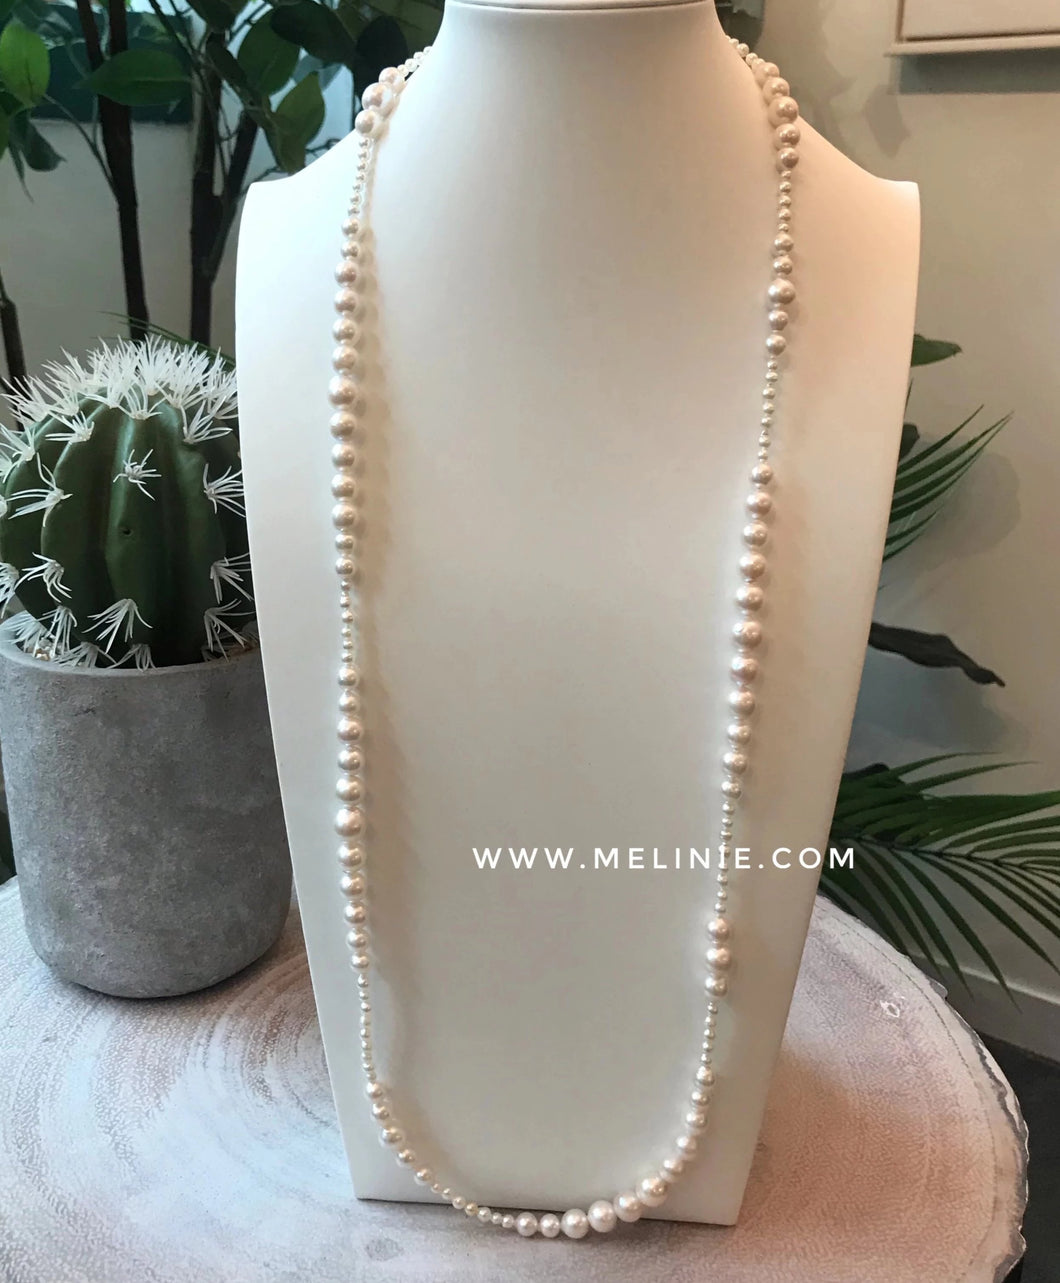 pearl necklace akoya 珍珠頸鏈 日本 項鍊 美億年珠寶 melinie jewelry